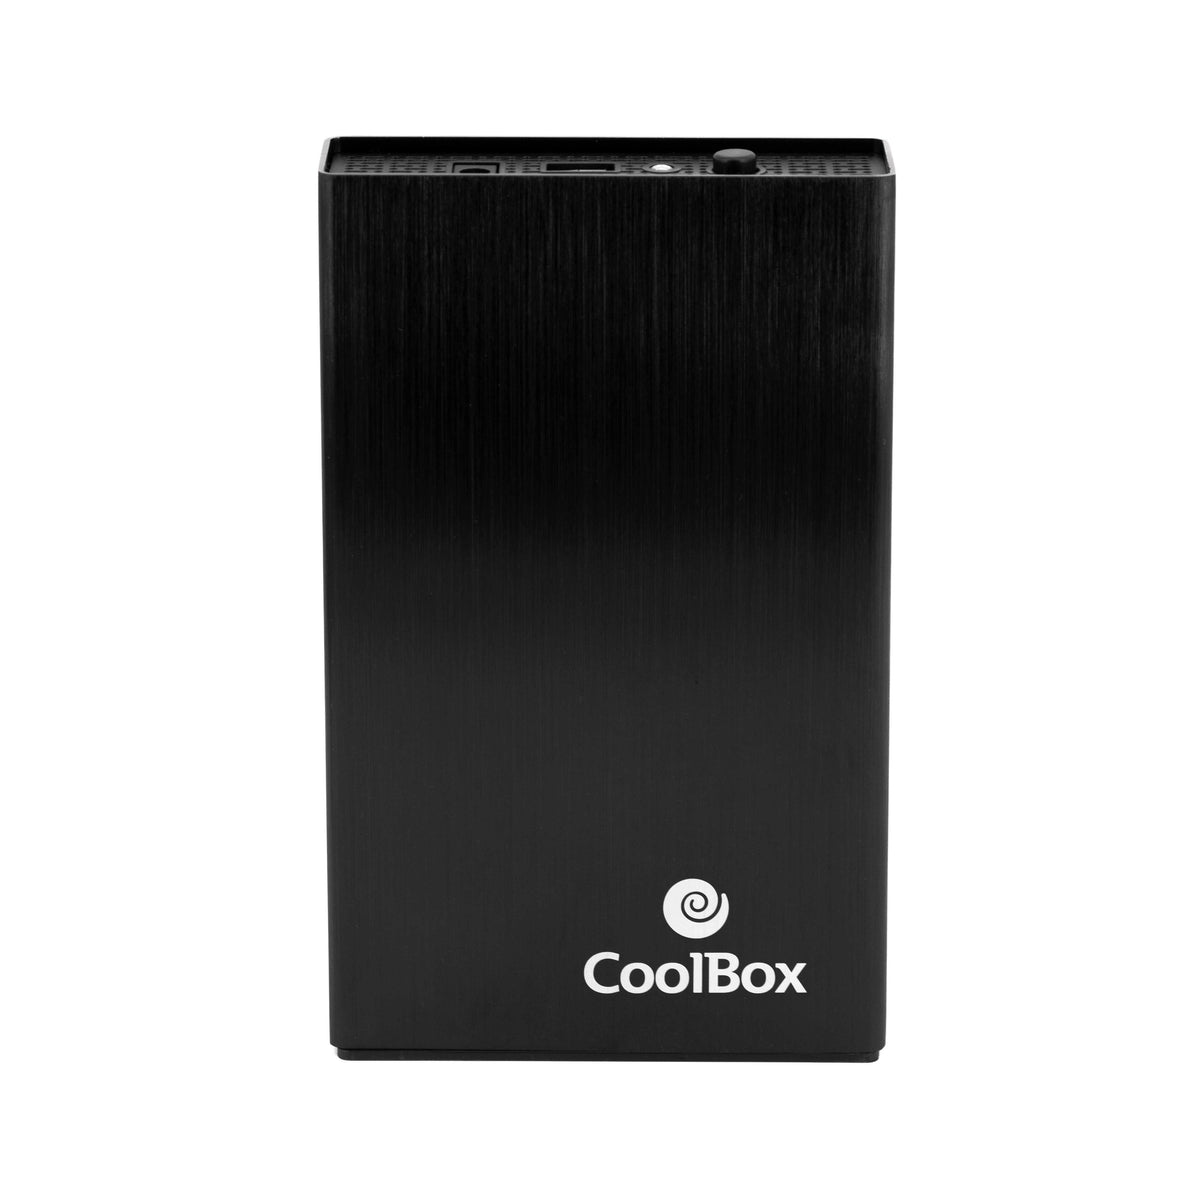 Caixa p/ disco externo 3.5 CoolBox SCA-3533 USB3.0 Aluminio Black